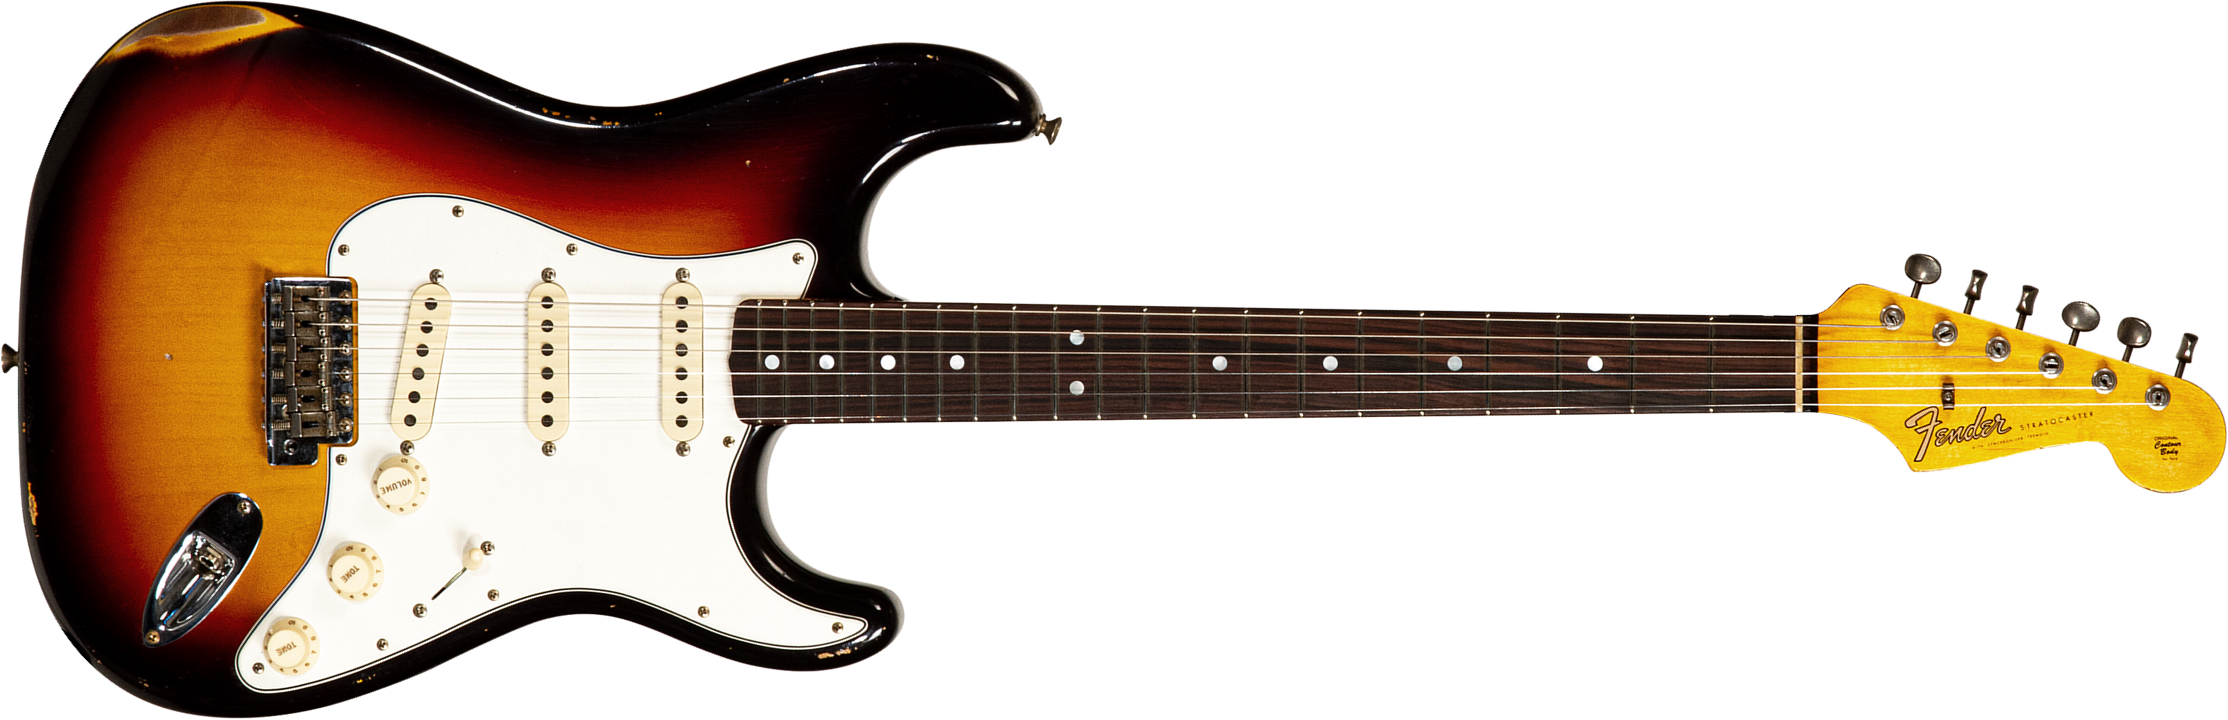 Fender Custom Shop Strat Late 64 3s Trem Rw #cz568169 - Relic Target 3-color Sunburst - Guitarra eléctrica con forma de str. - Main picture